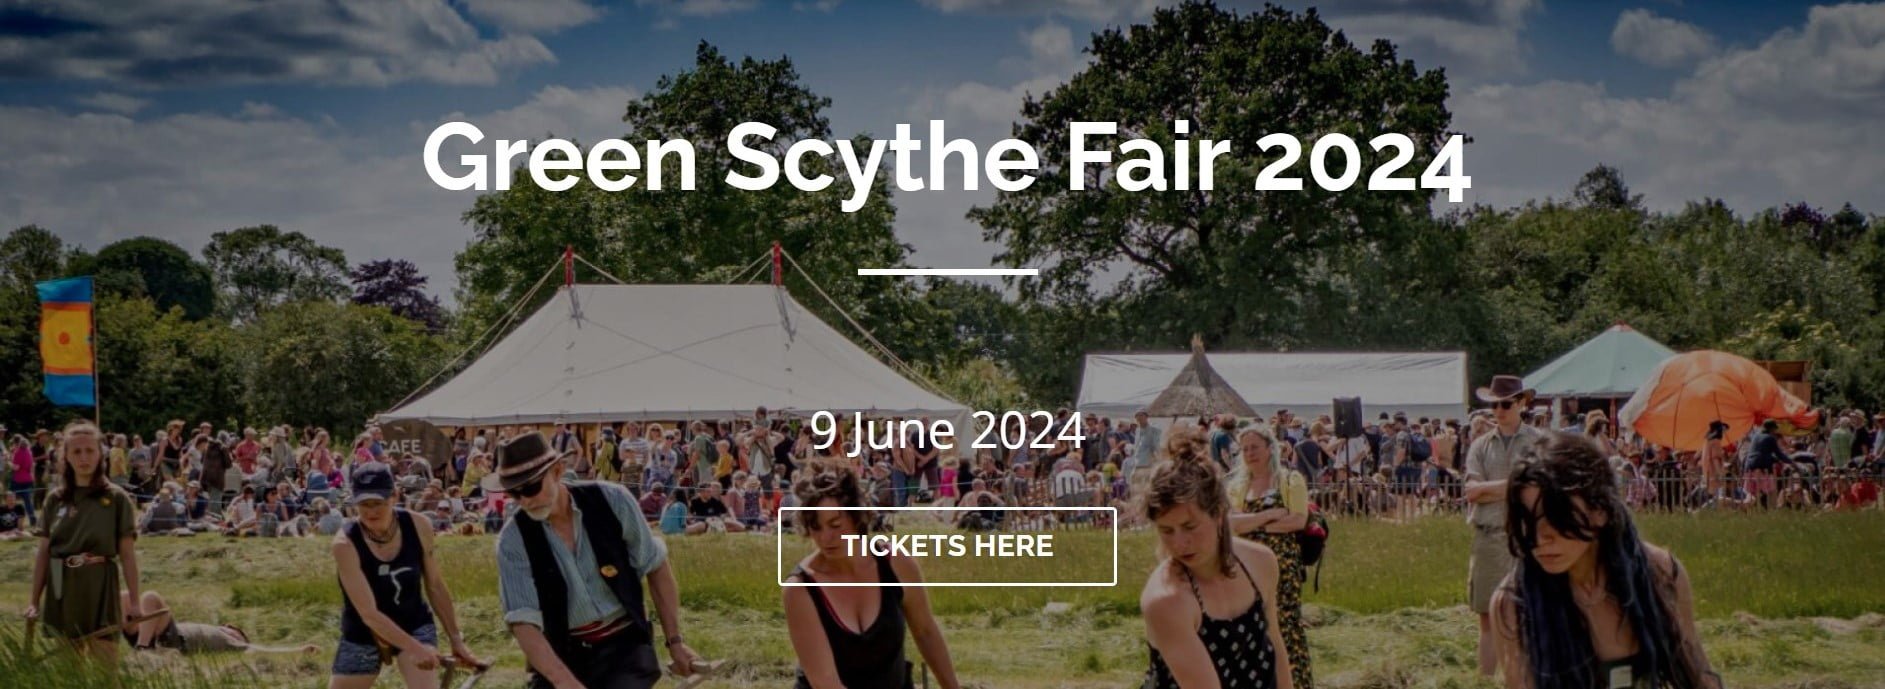 Green Scythe Fair 2024